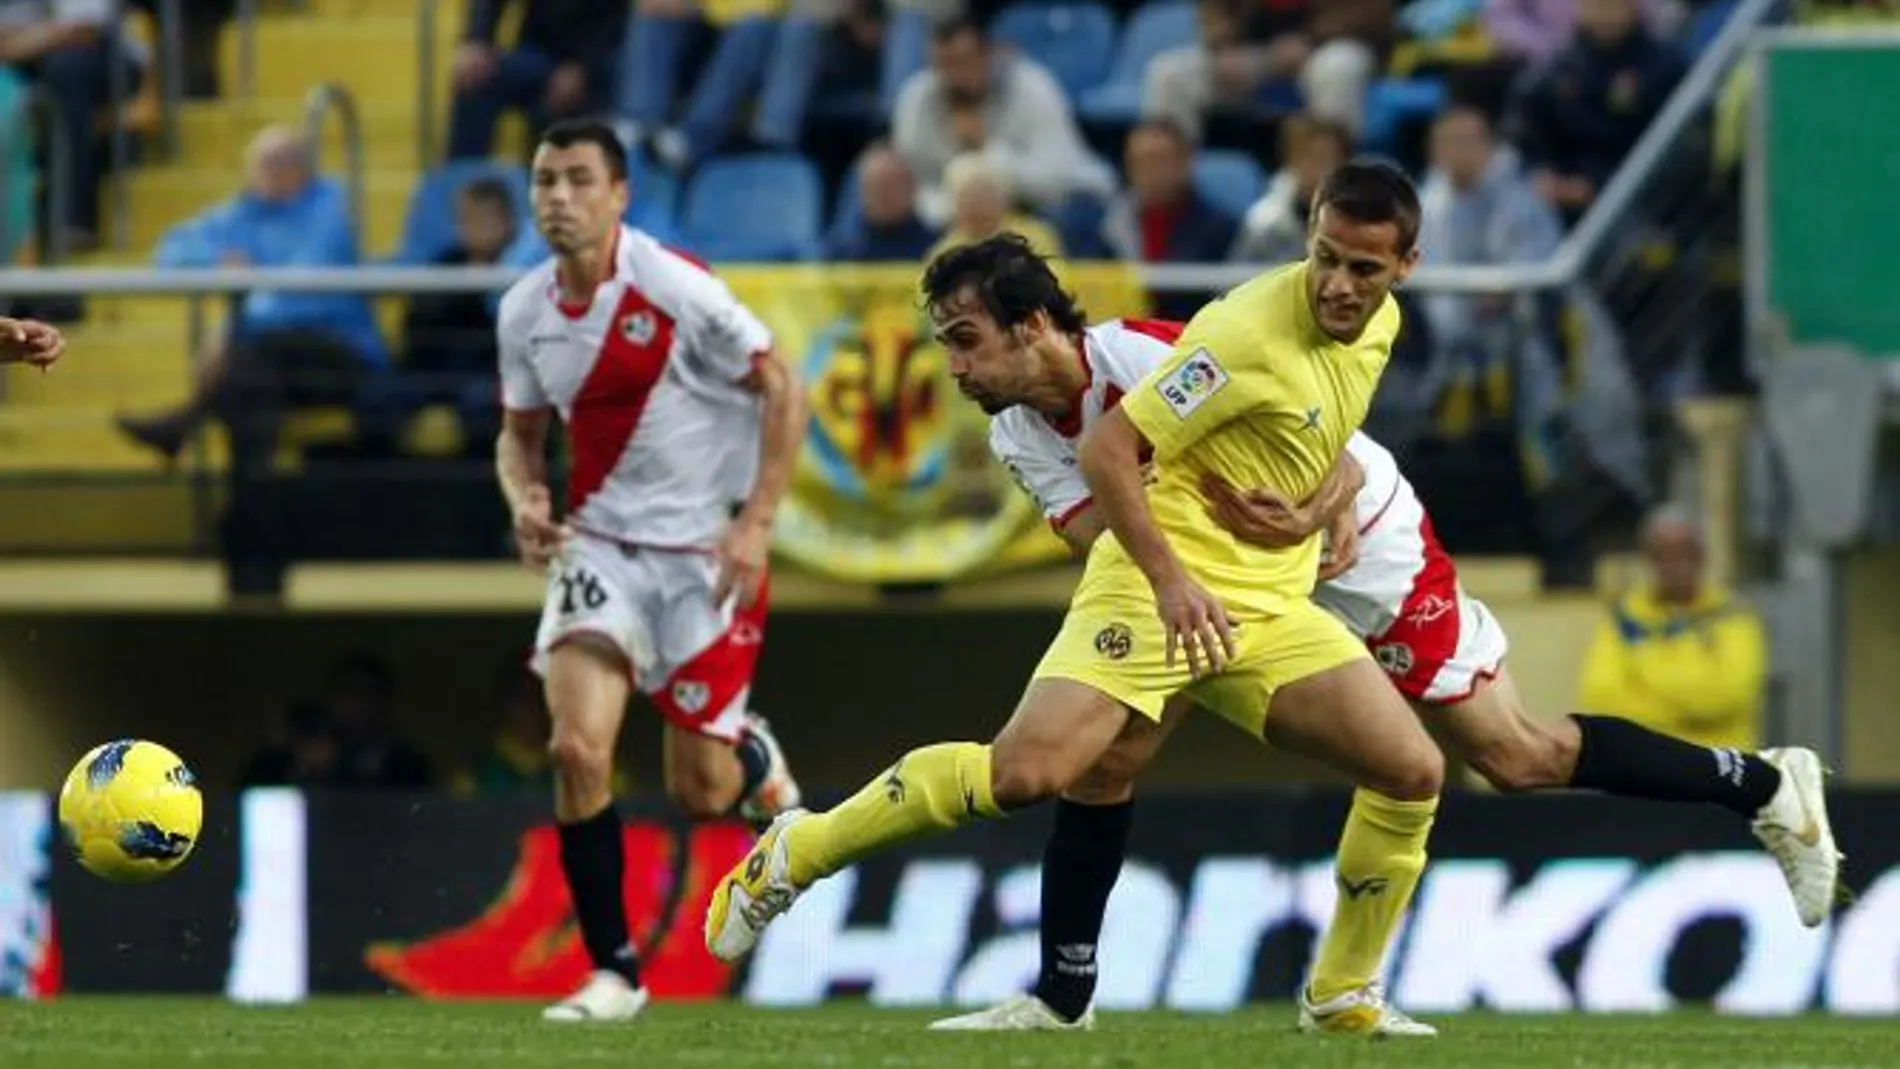 El Villarreal rompe su mala racha frente a un Rayo sin pegada